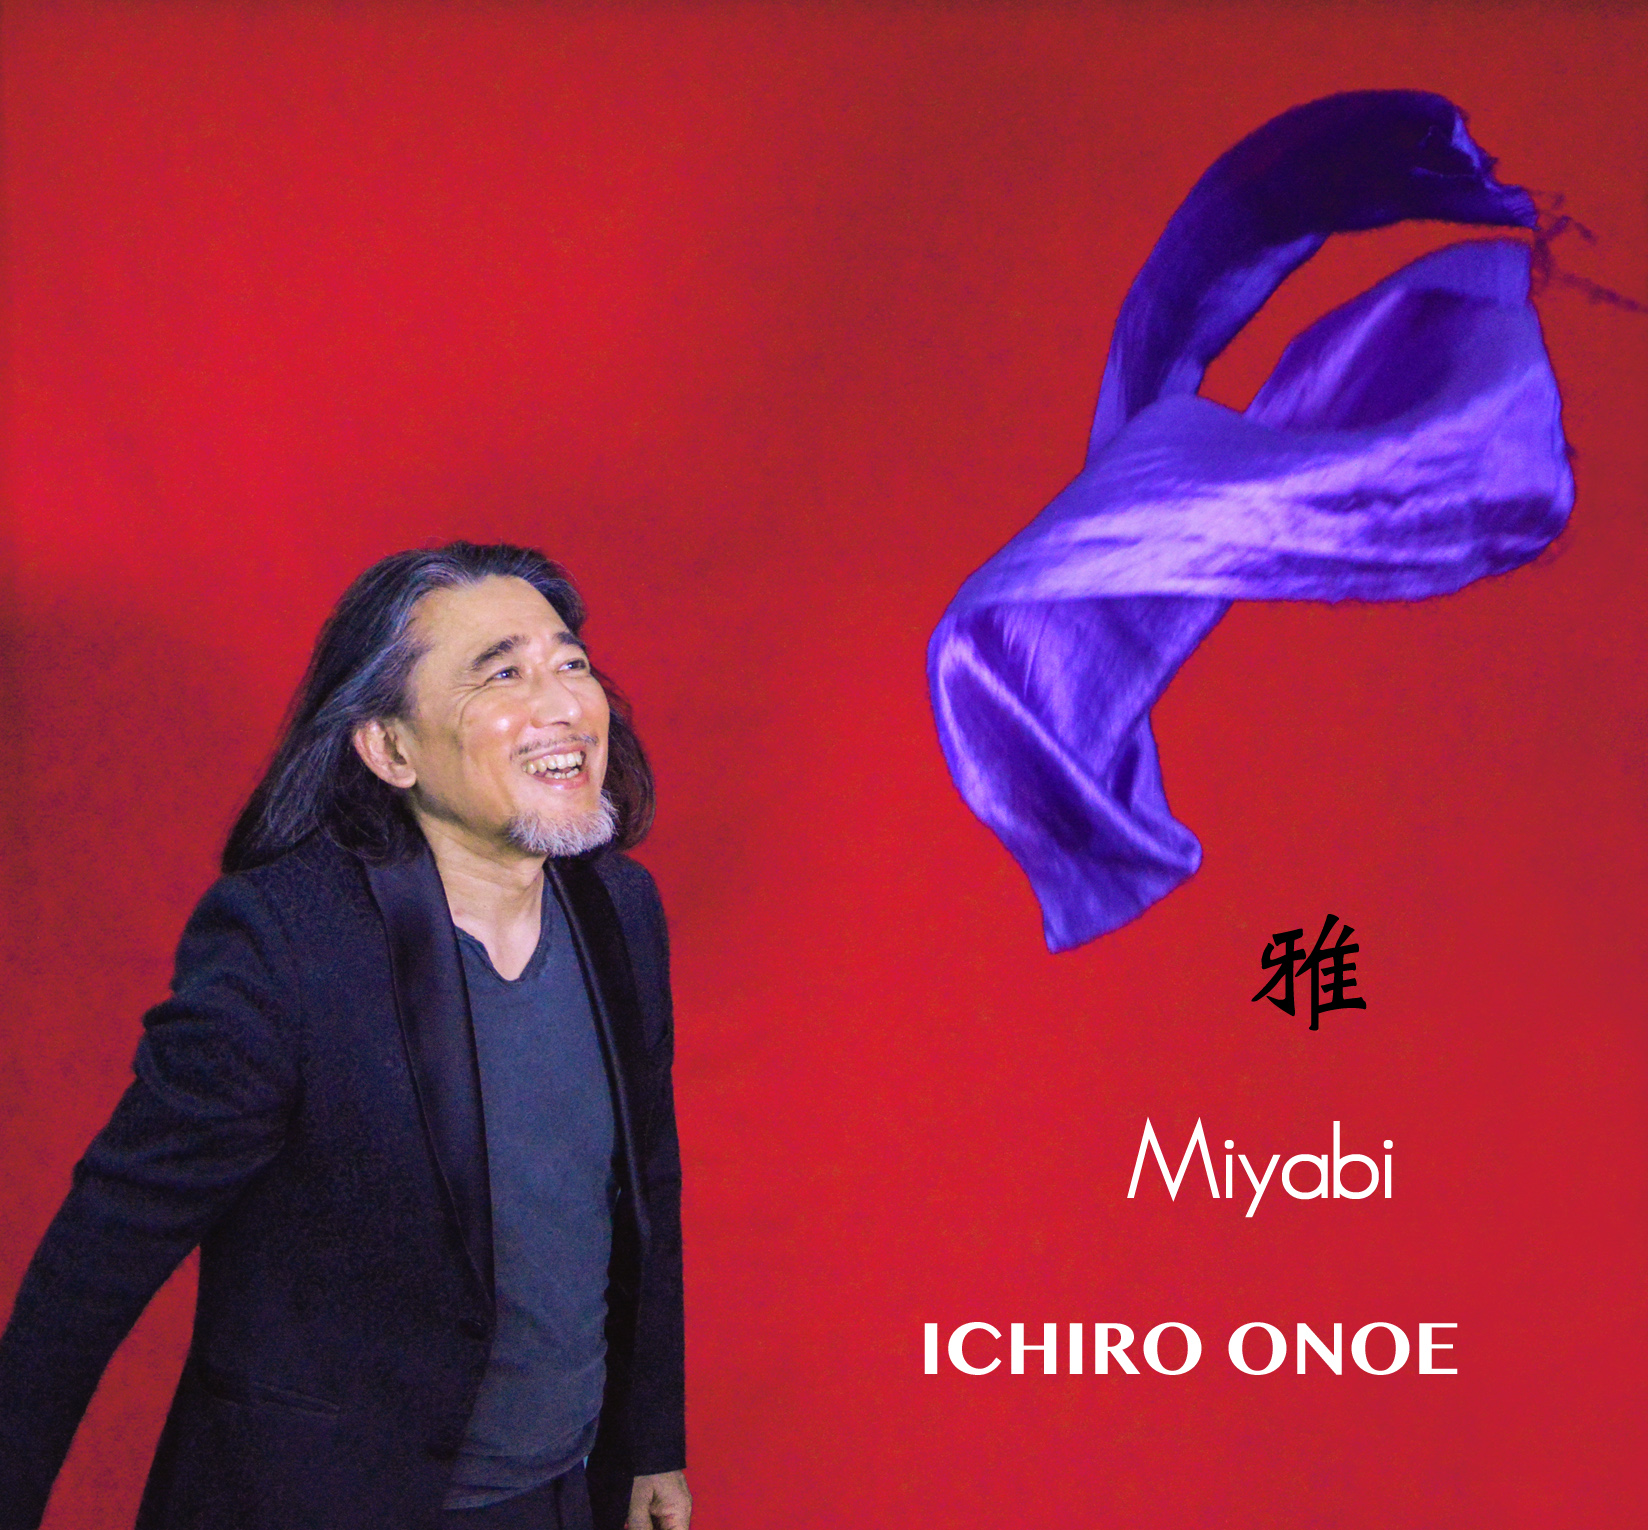 Ichiro Onoe / Miyabi